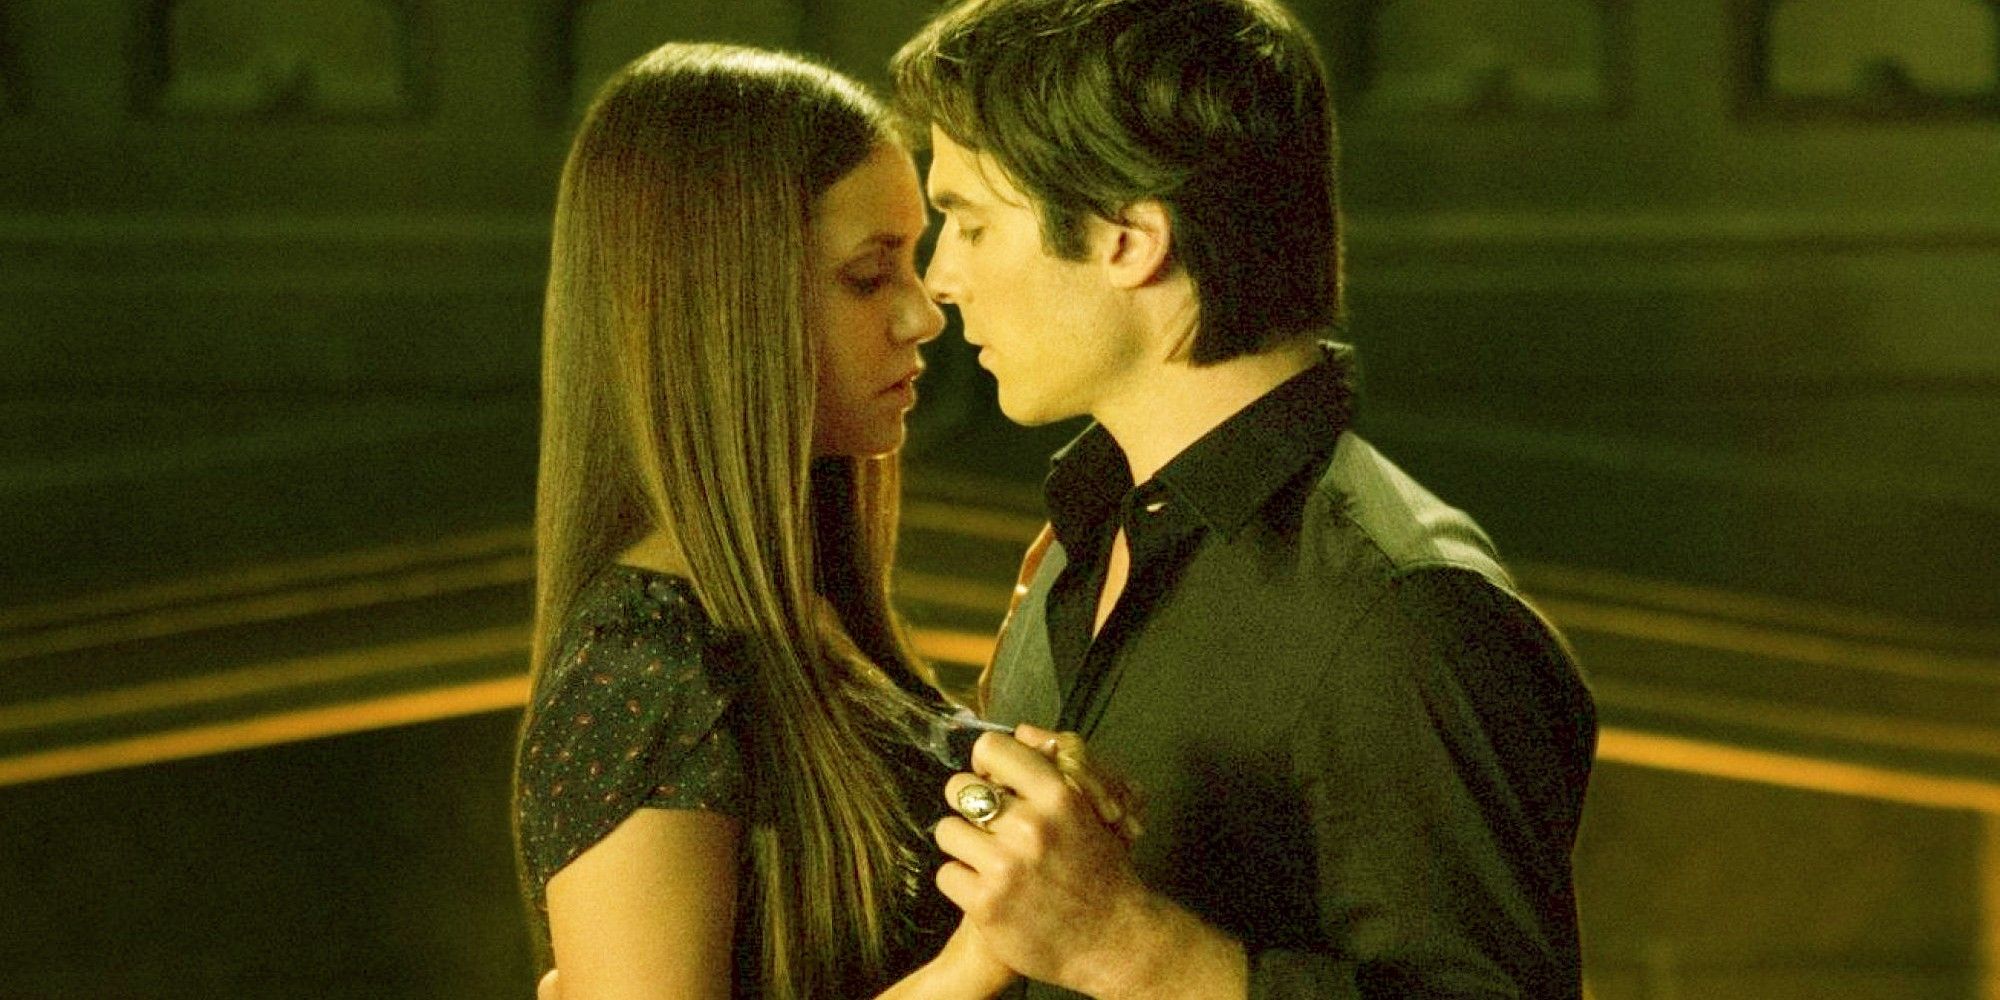 Vampire Diaries Elena and Damon